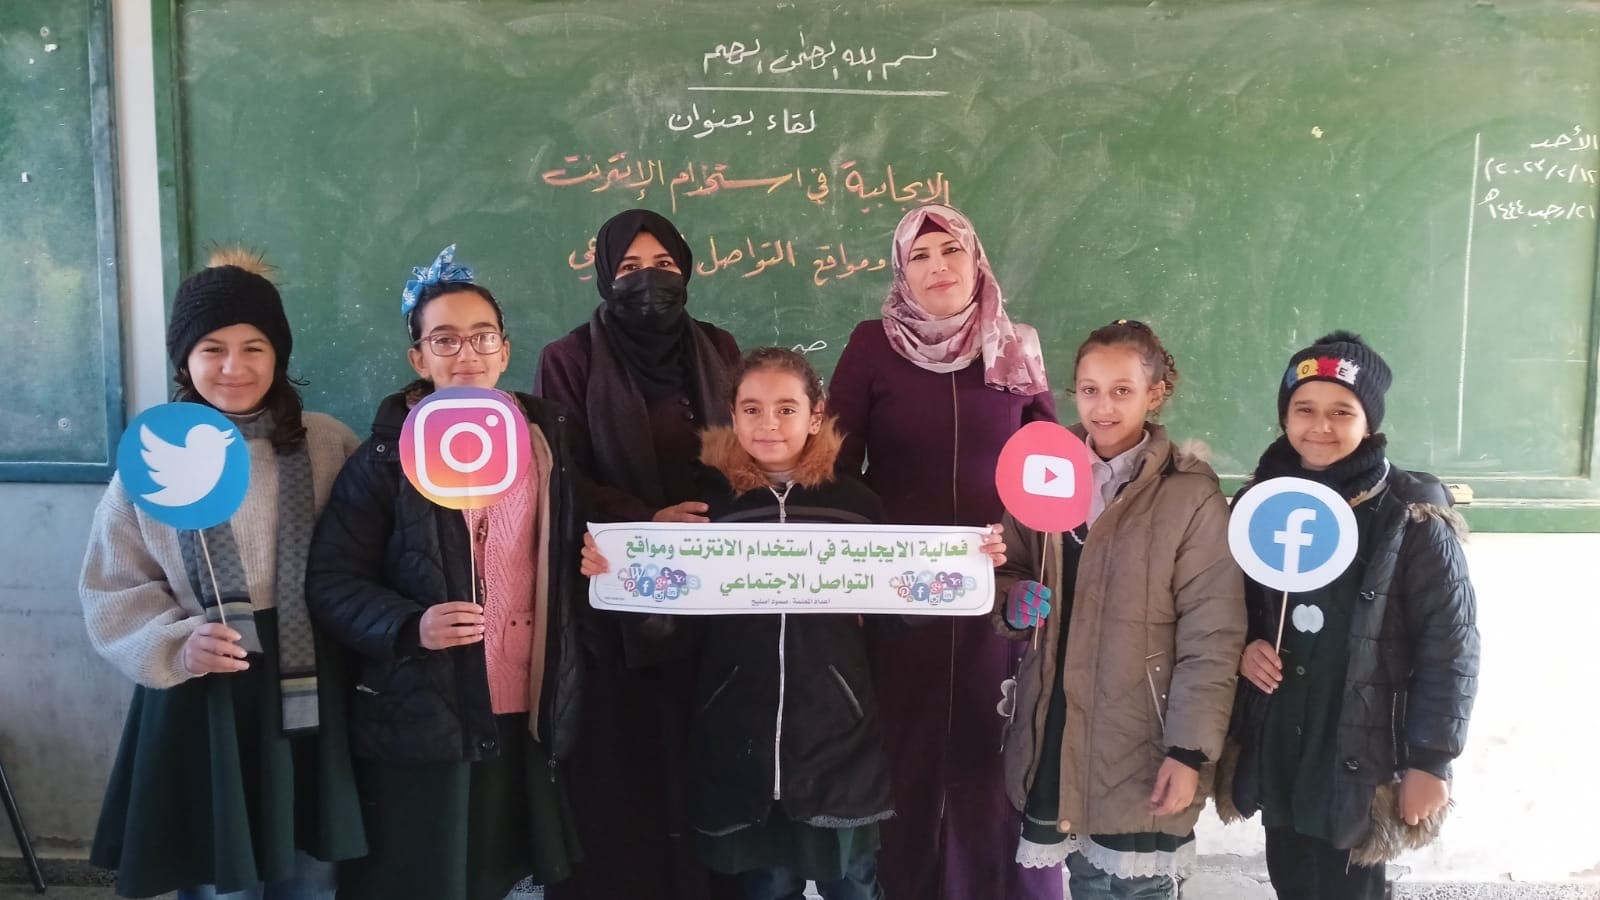 شاهد: التعليم بغزة تُنفذ حملة في المدارس للتوعية بأهمية الاستخدام الإيجابي للإنترنت